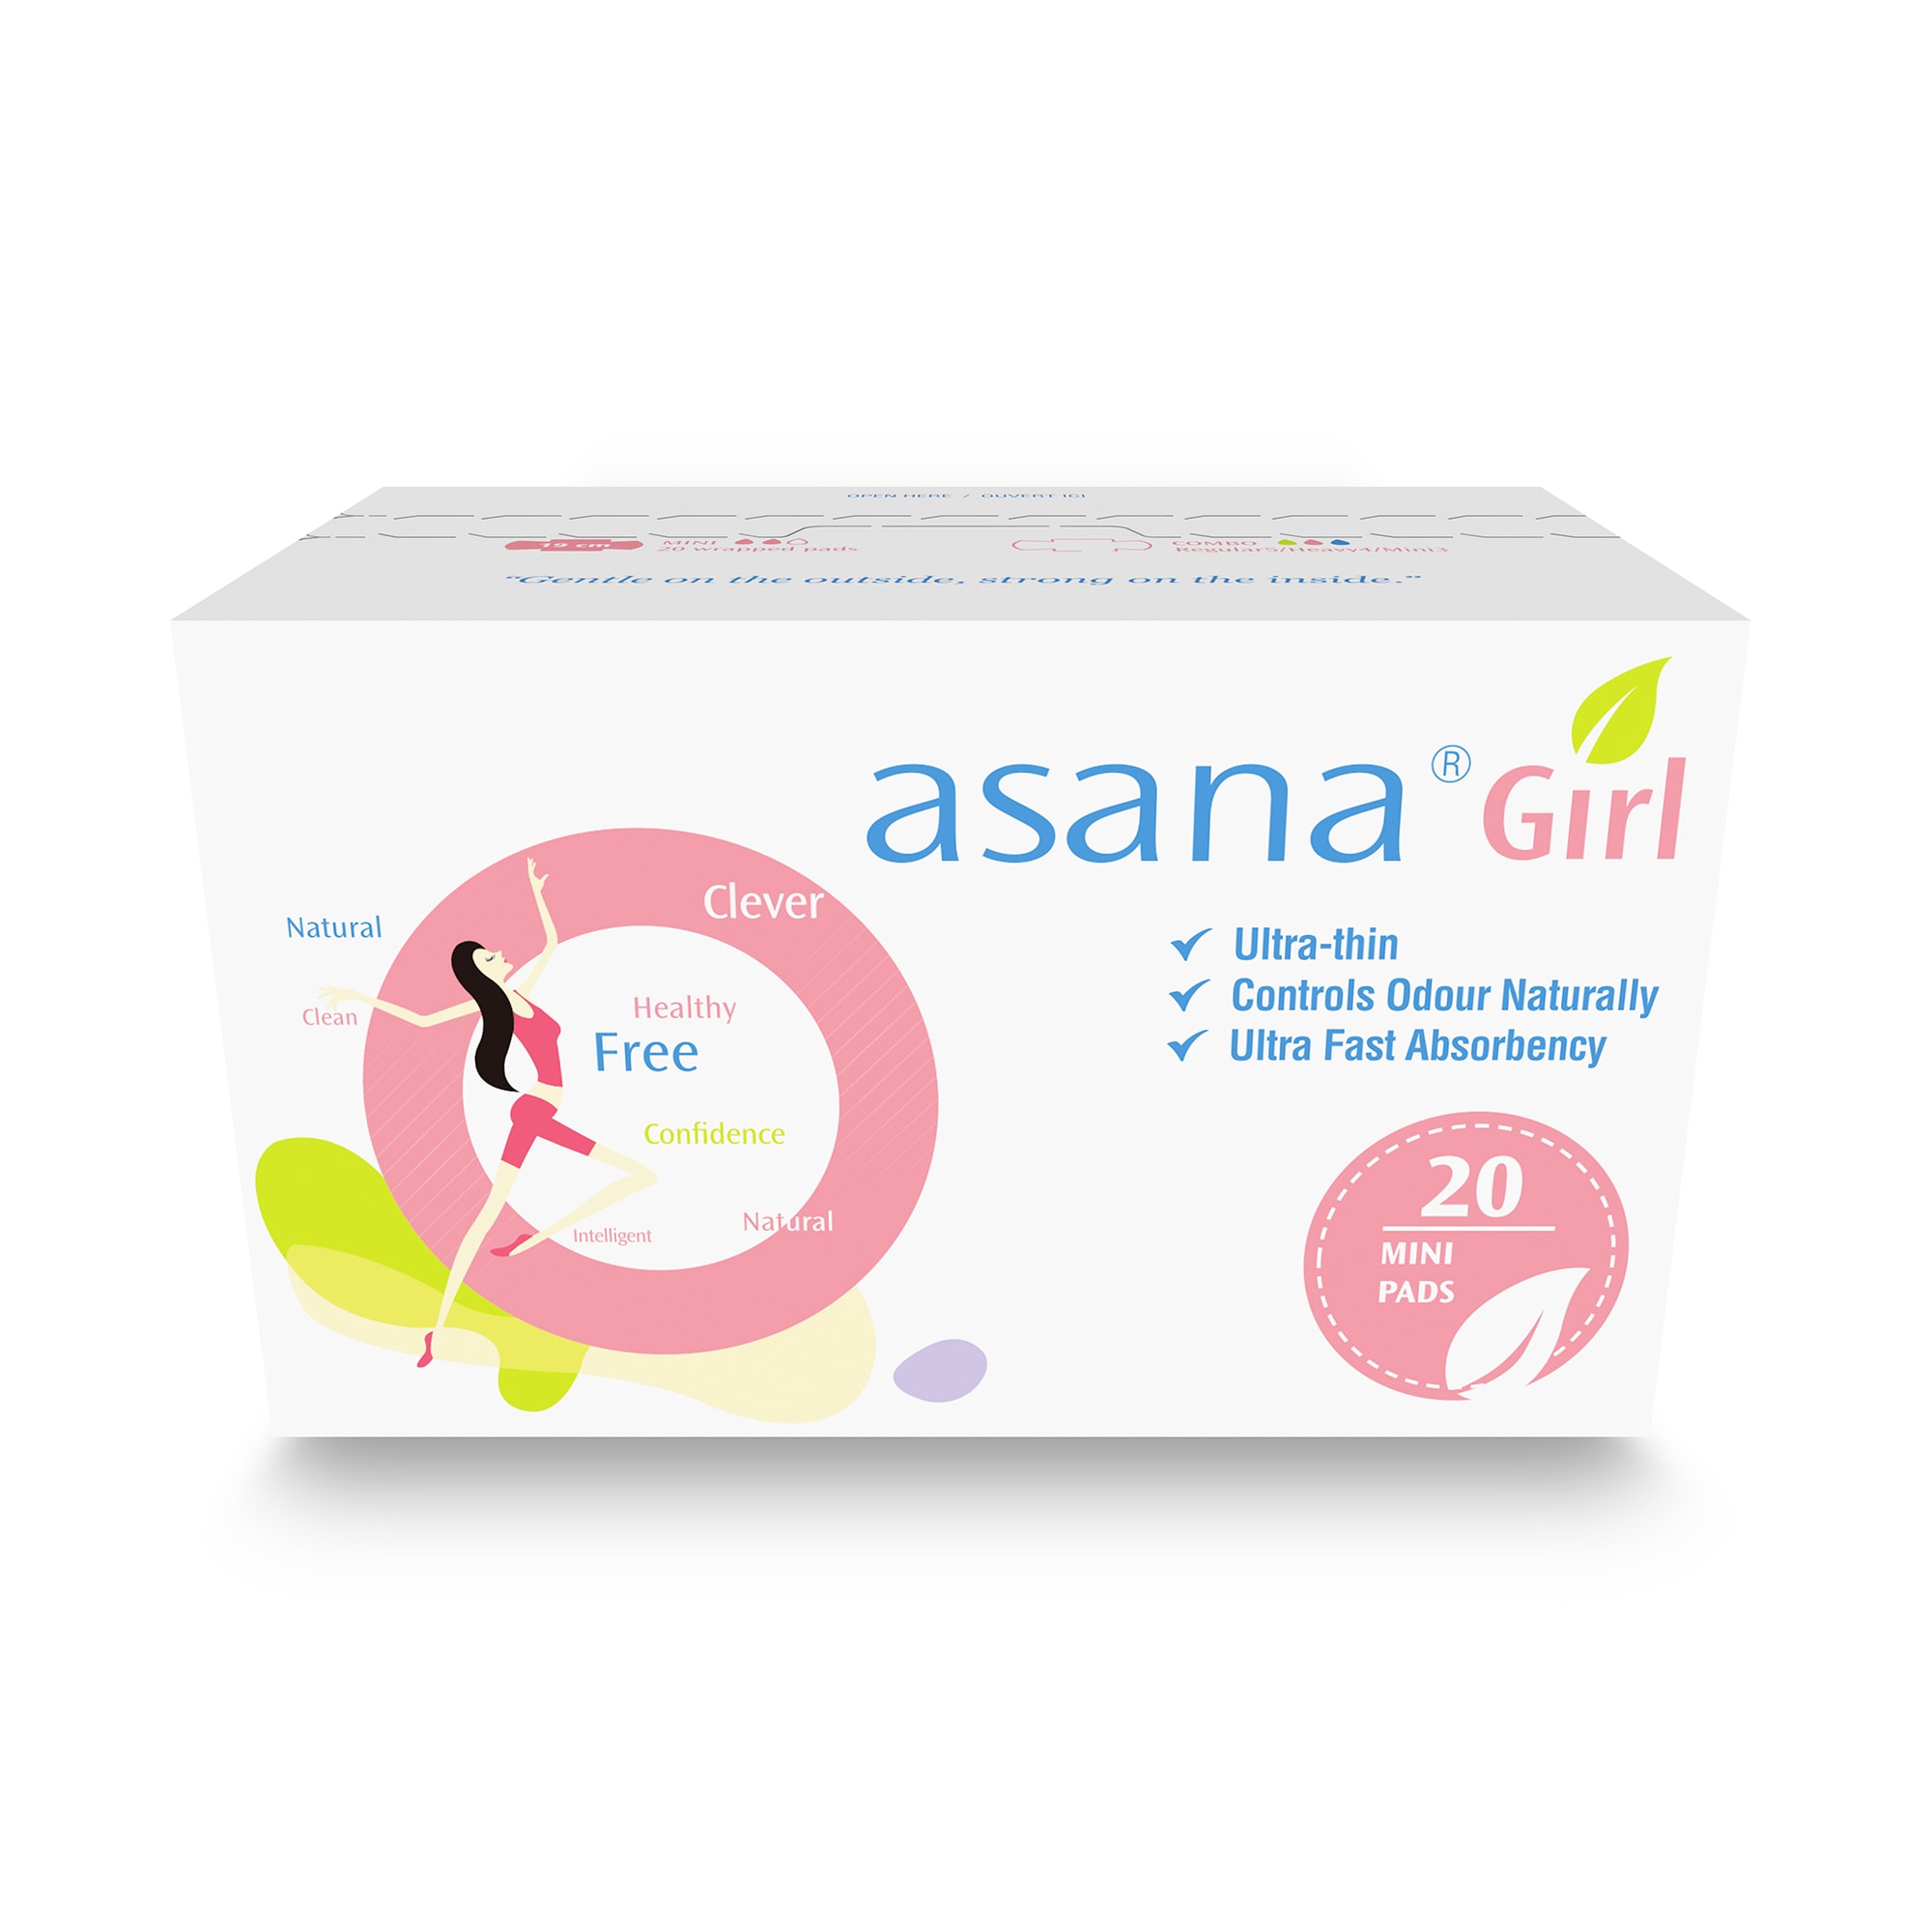 asana Girl packaging ultra thin natural pads 20 pack